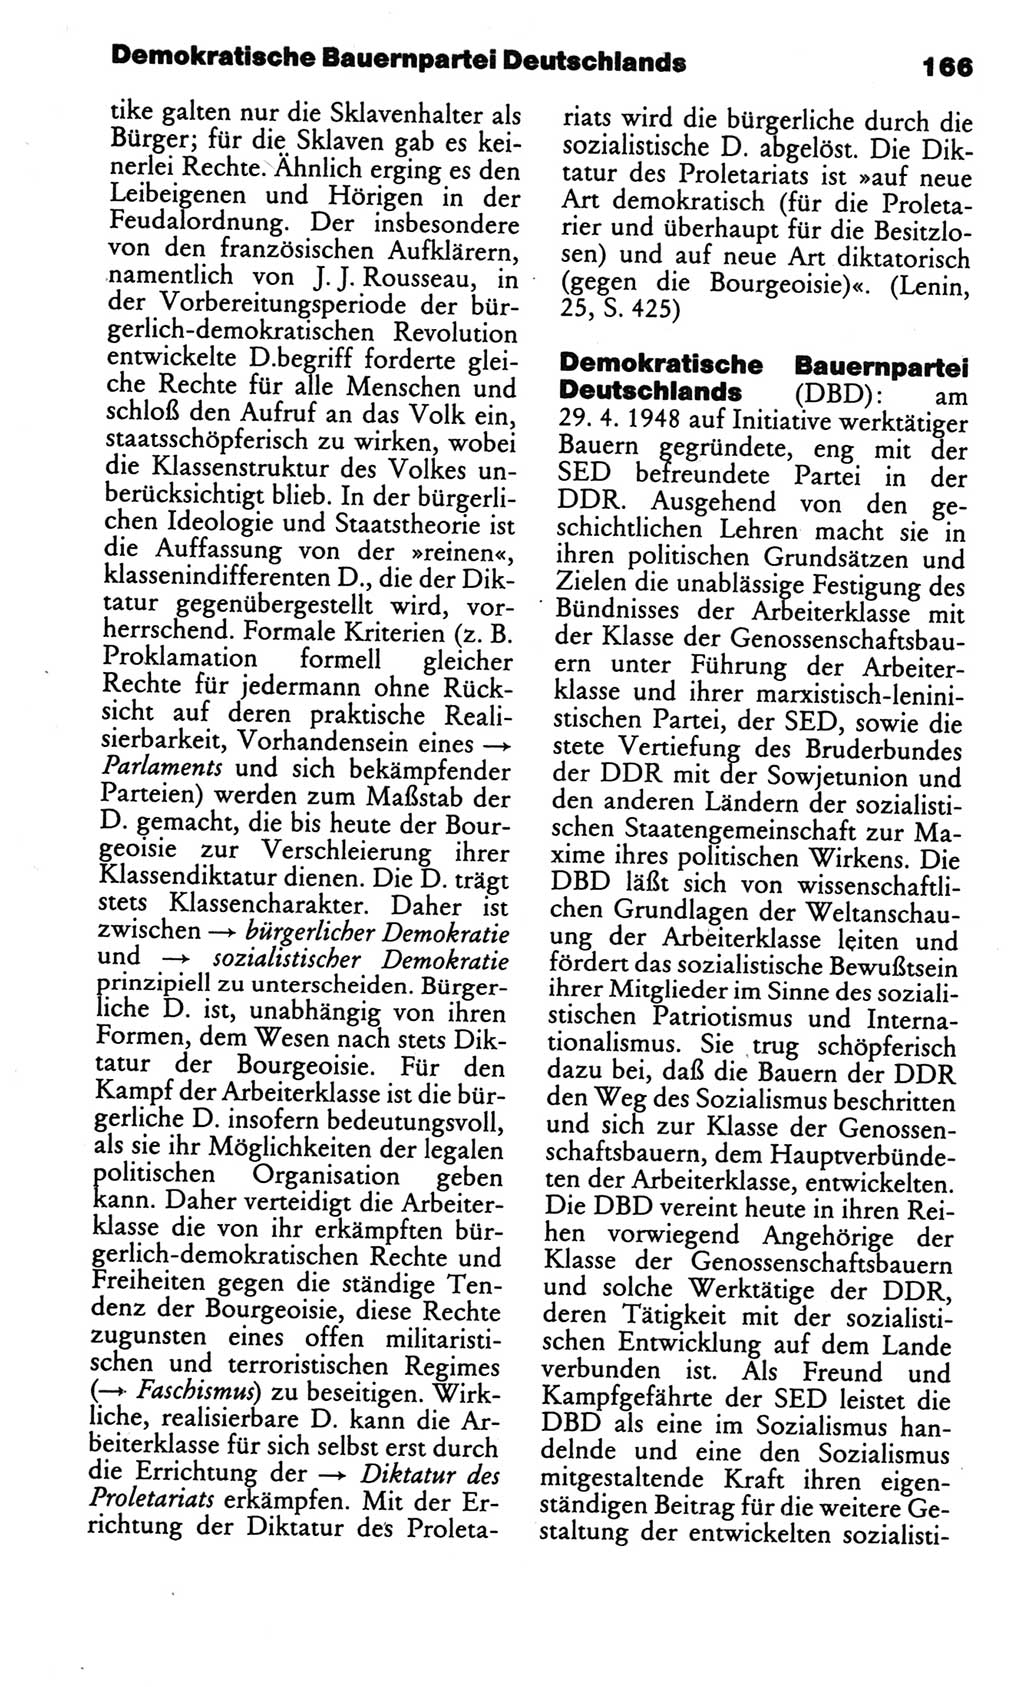 Kleines politisches Wörterbuch [Deutsche Demokratische Republik (DDR)] 1986, Seite 166 (Kl. pol. Wb. DDR 1986, S. 166)